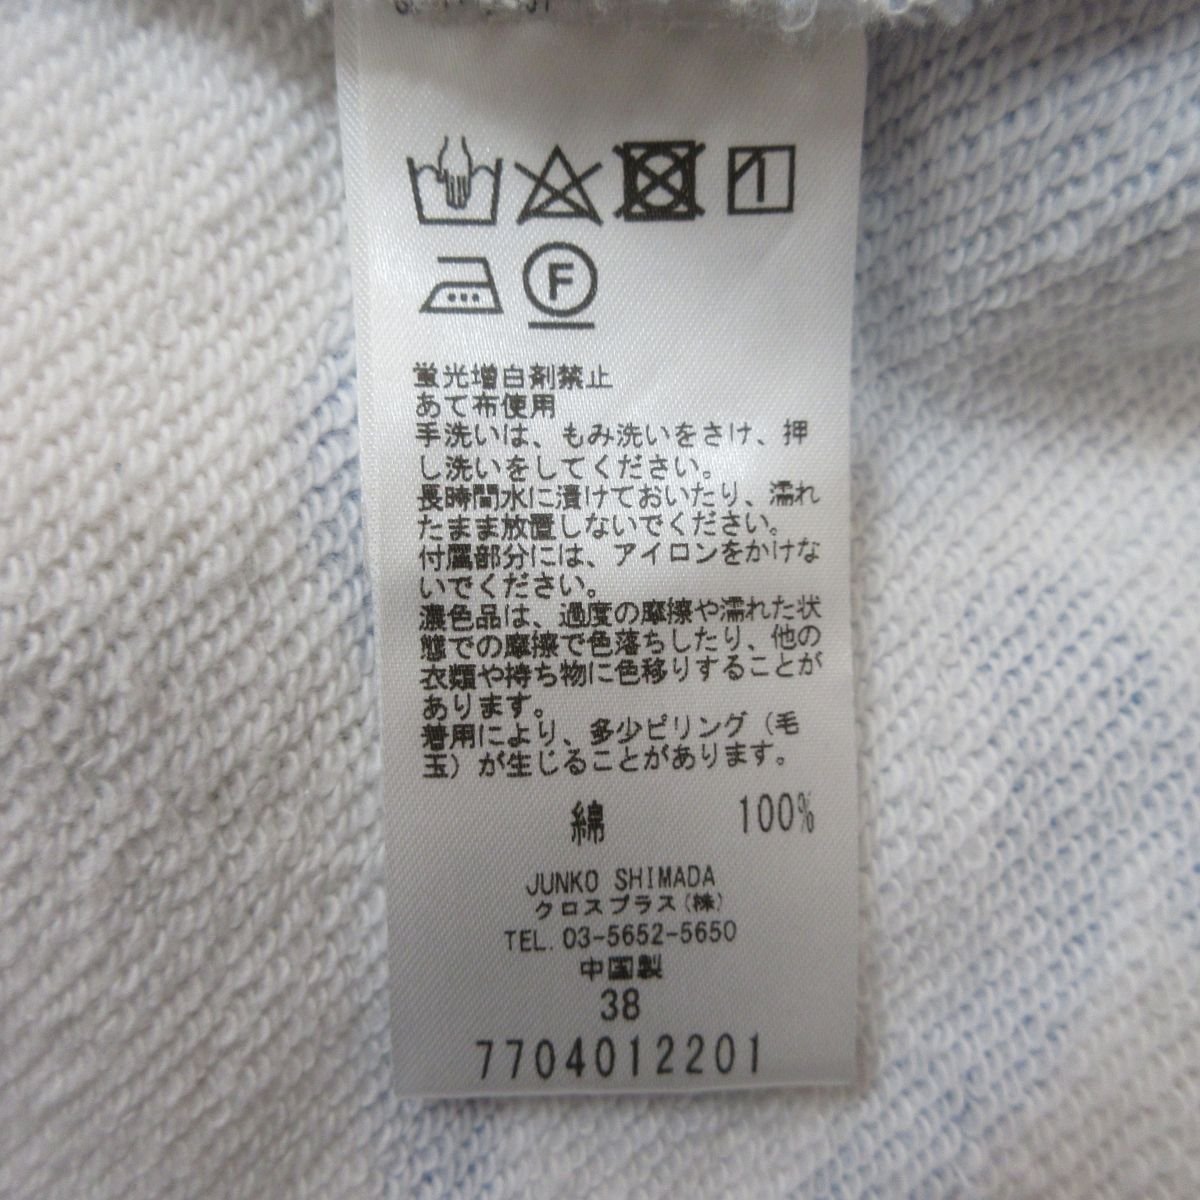 新品同様 JUNKO SHIMADA ジュンコシマダ マダムフェイスプリント プルオーバー スウェットパーカー オーバーサイズ 38 ホワイト×ブルー_画像6